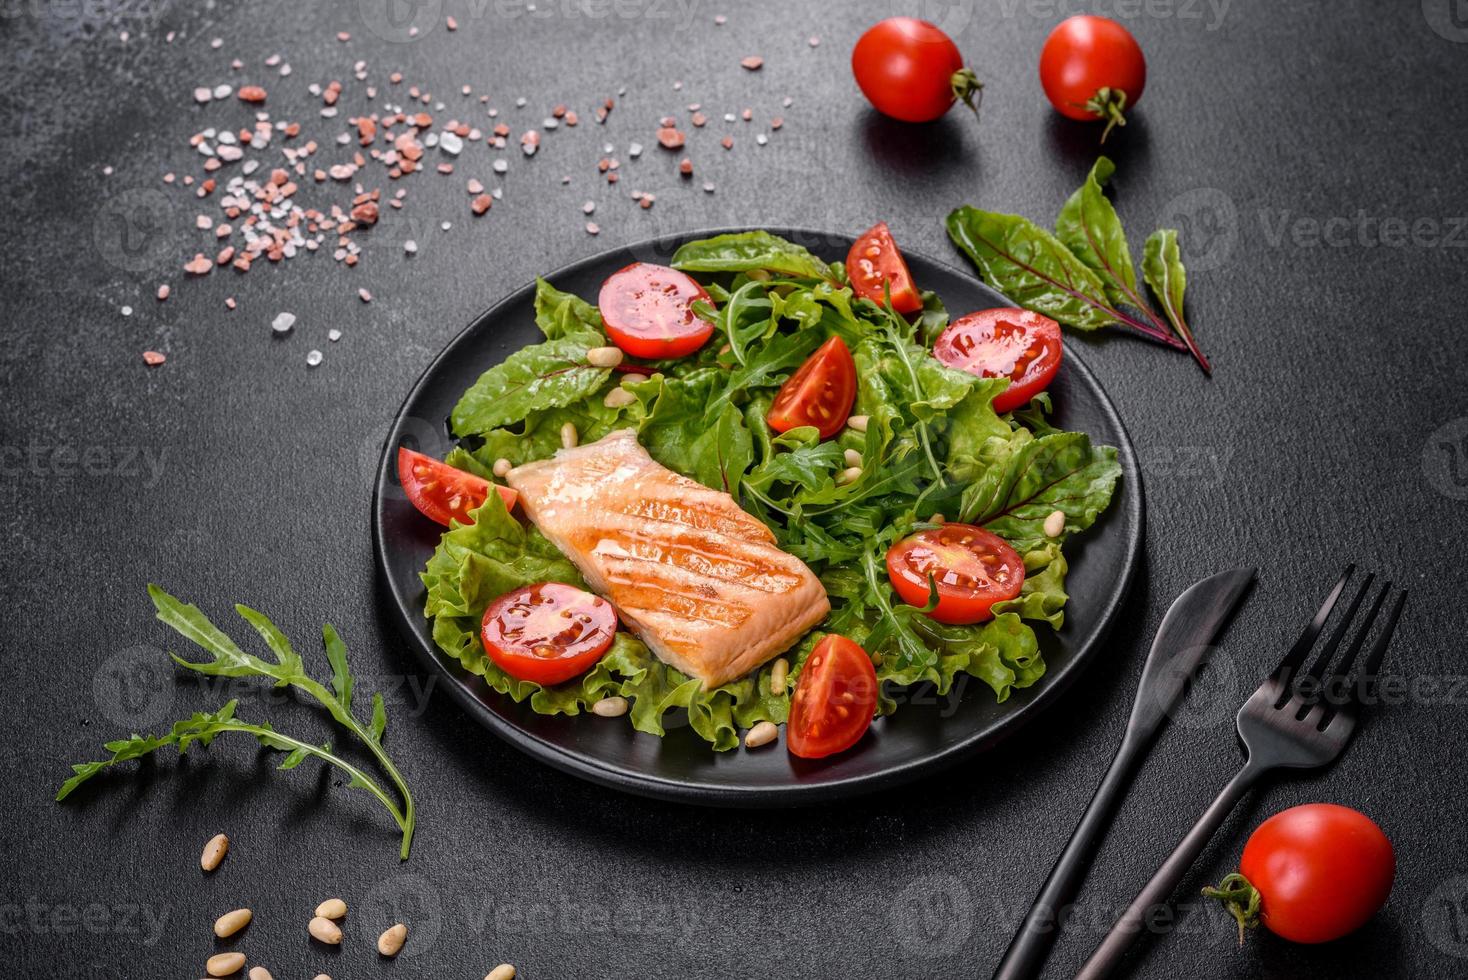 délicieuse salade fraîche avec du poisson, des tomates et des feuilles de laitue photo